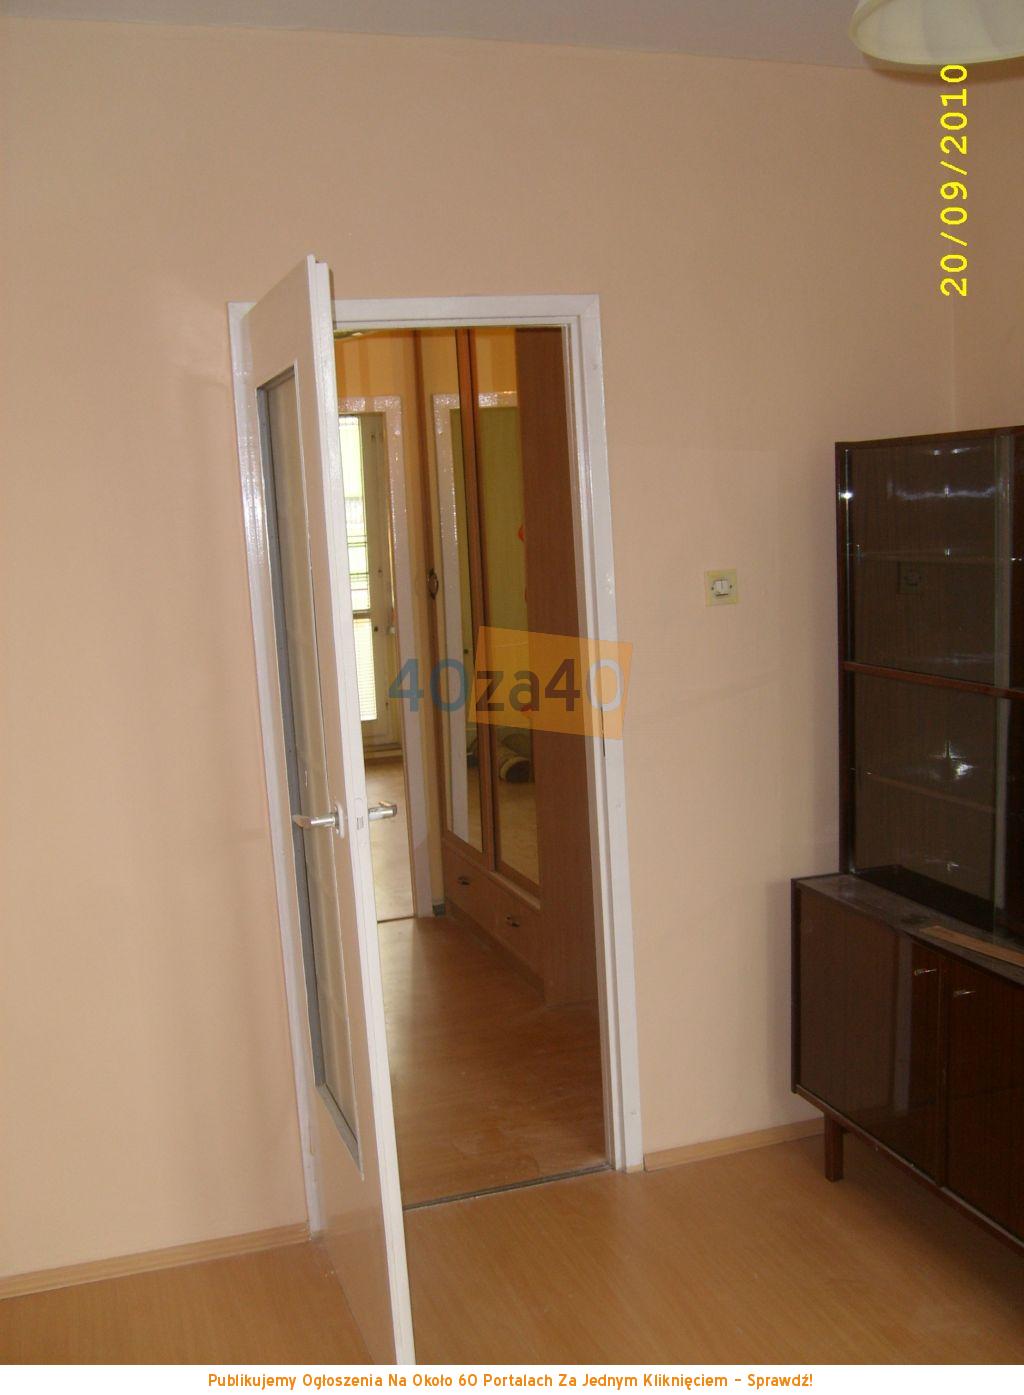 Mieszkanie do wynajęcia, pokoje: 3, cena: 1 000,00 PLN, Goleniów, kontakt: 609384998